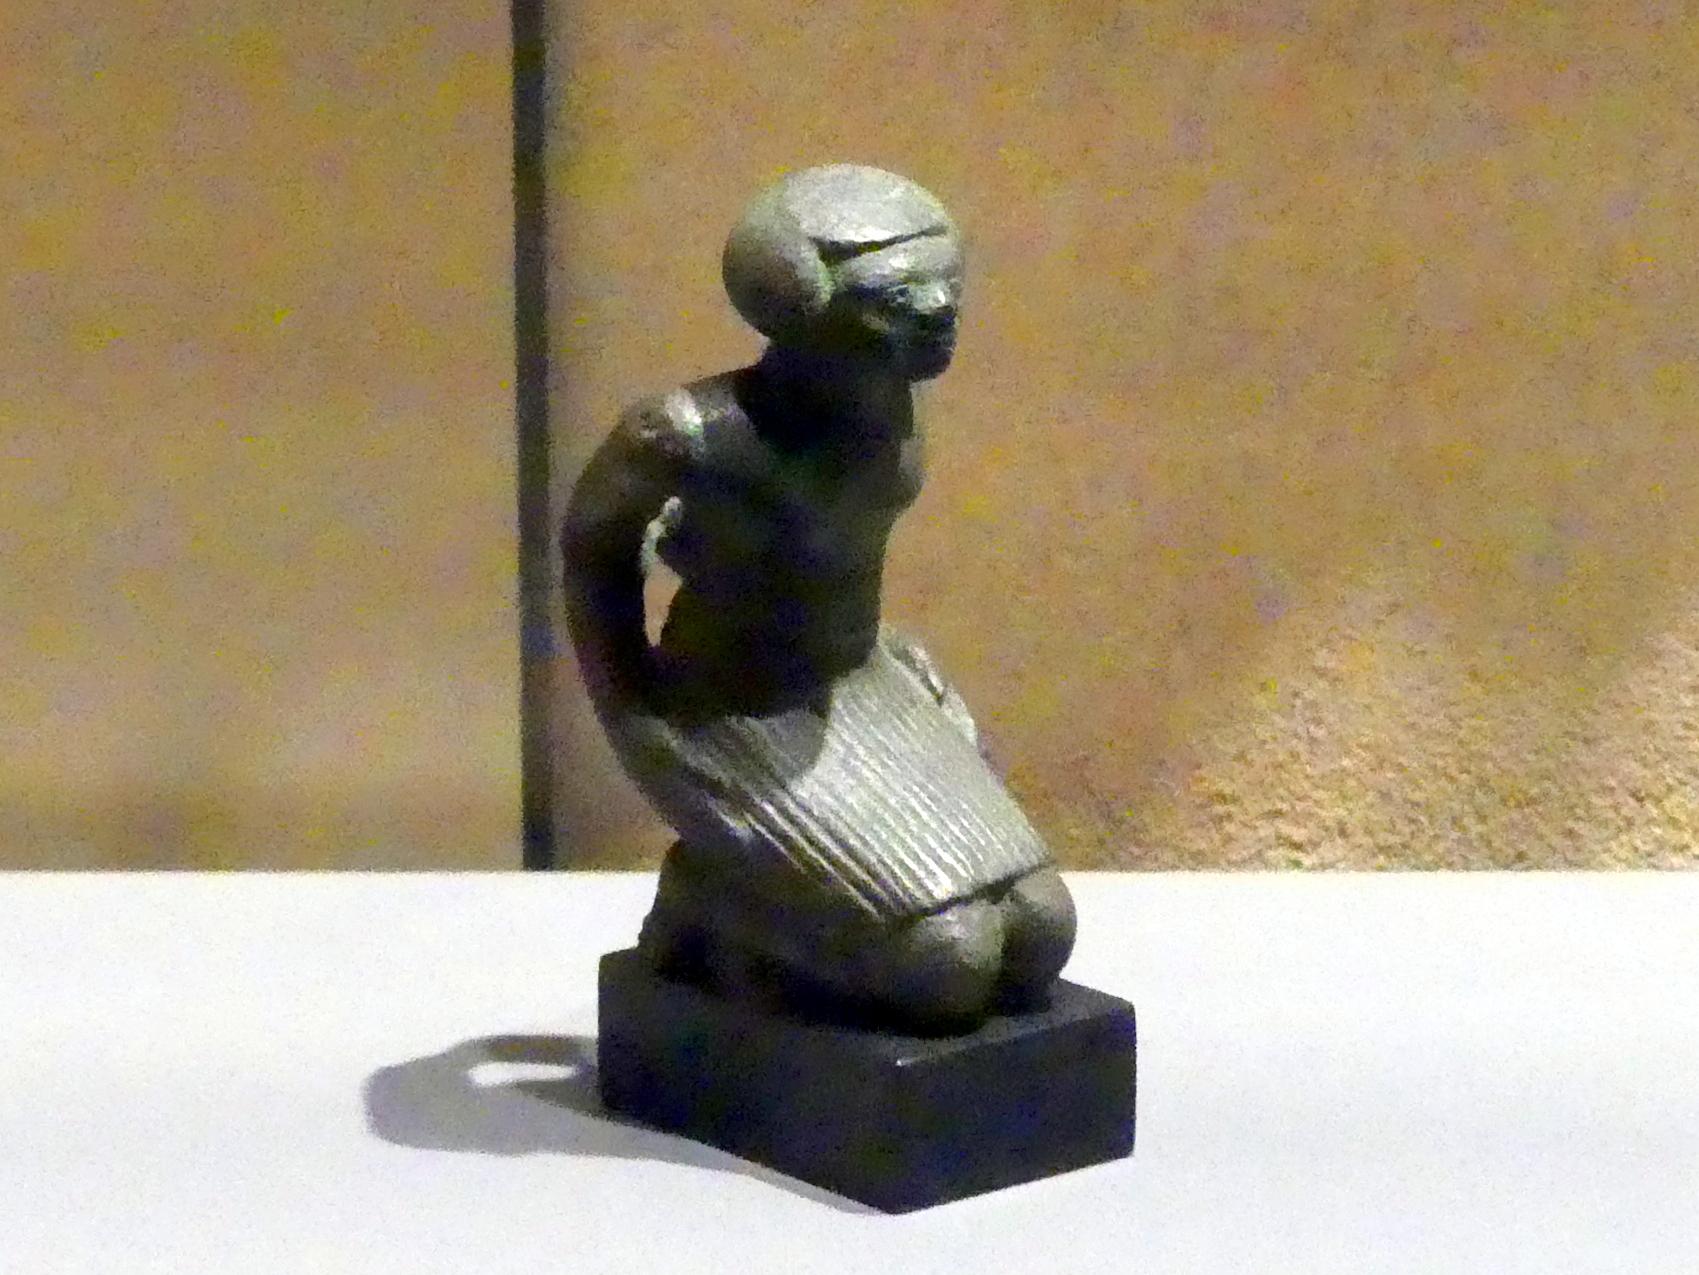 Figur eines knienden und gefesselten nubischen Gefangenen, 18. Dynastie, 1210 - 966 v. Chr., 1550 - 1450 v. Chr.